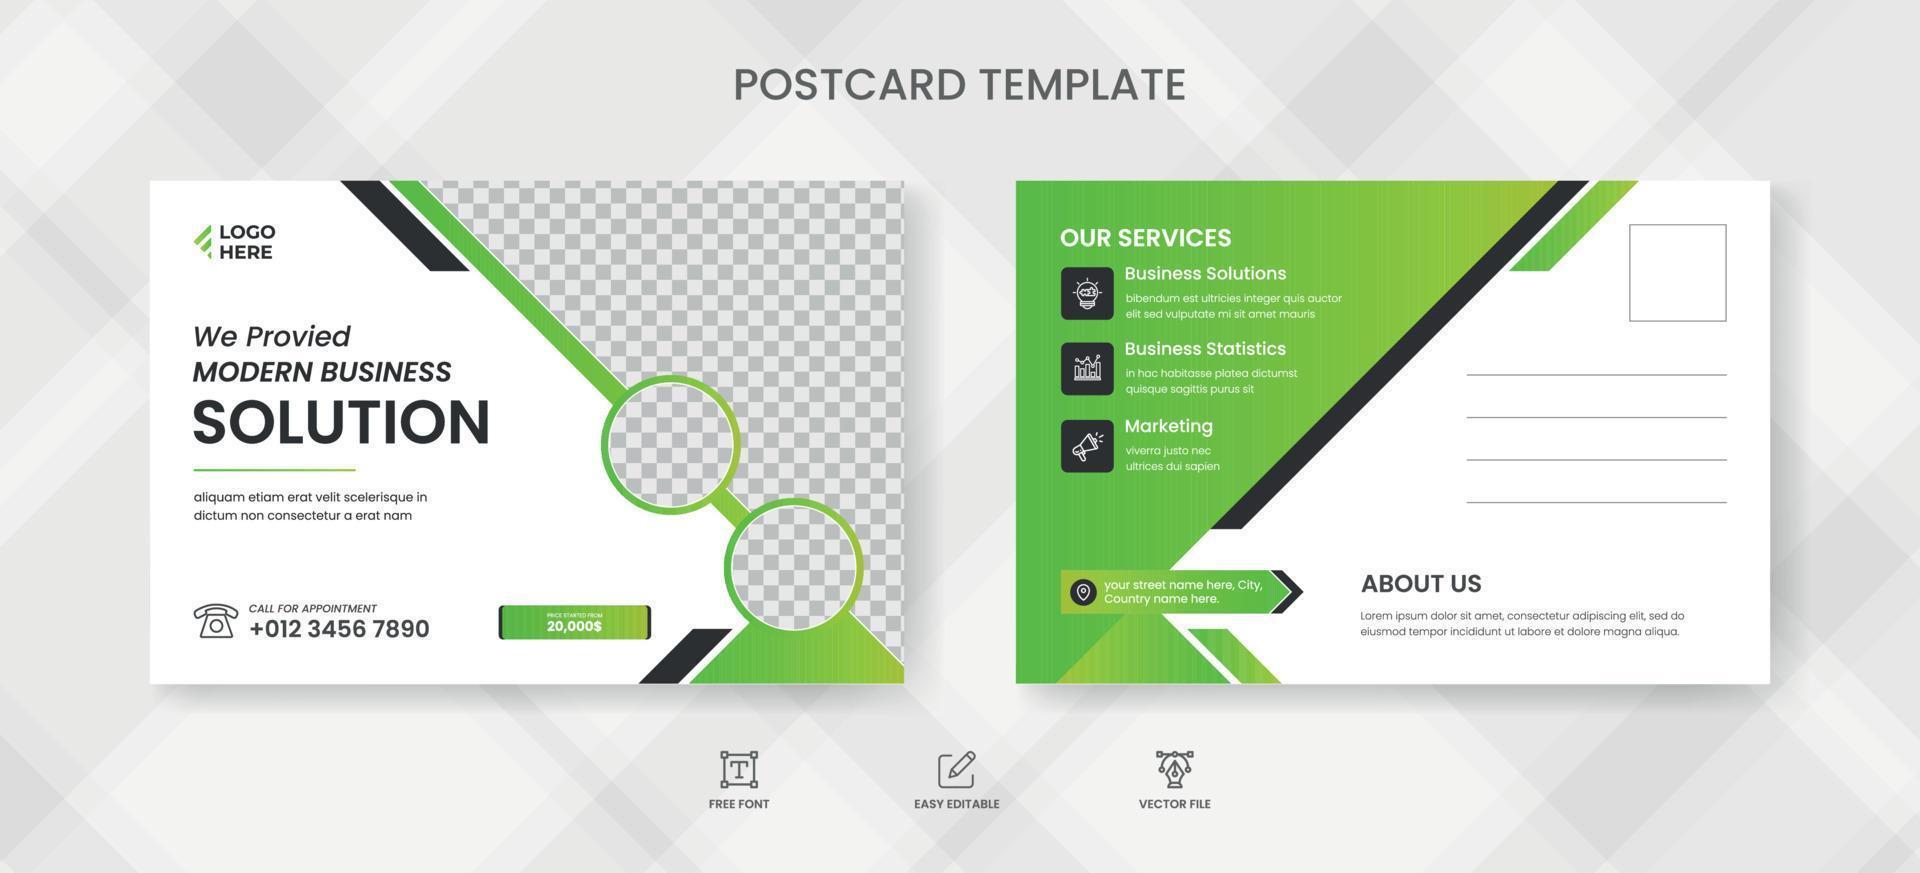 Corporate postcard design template vector